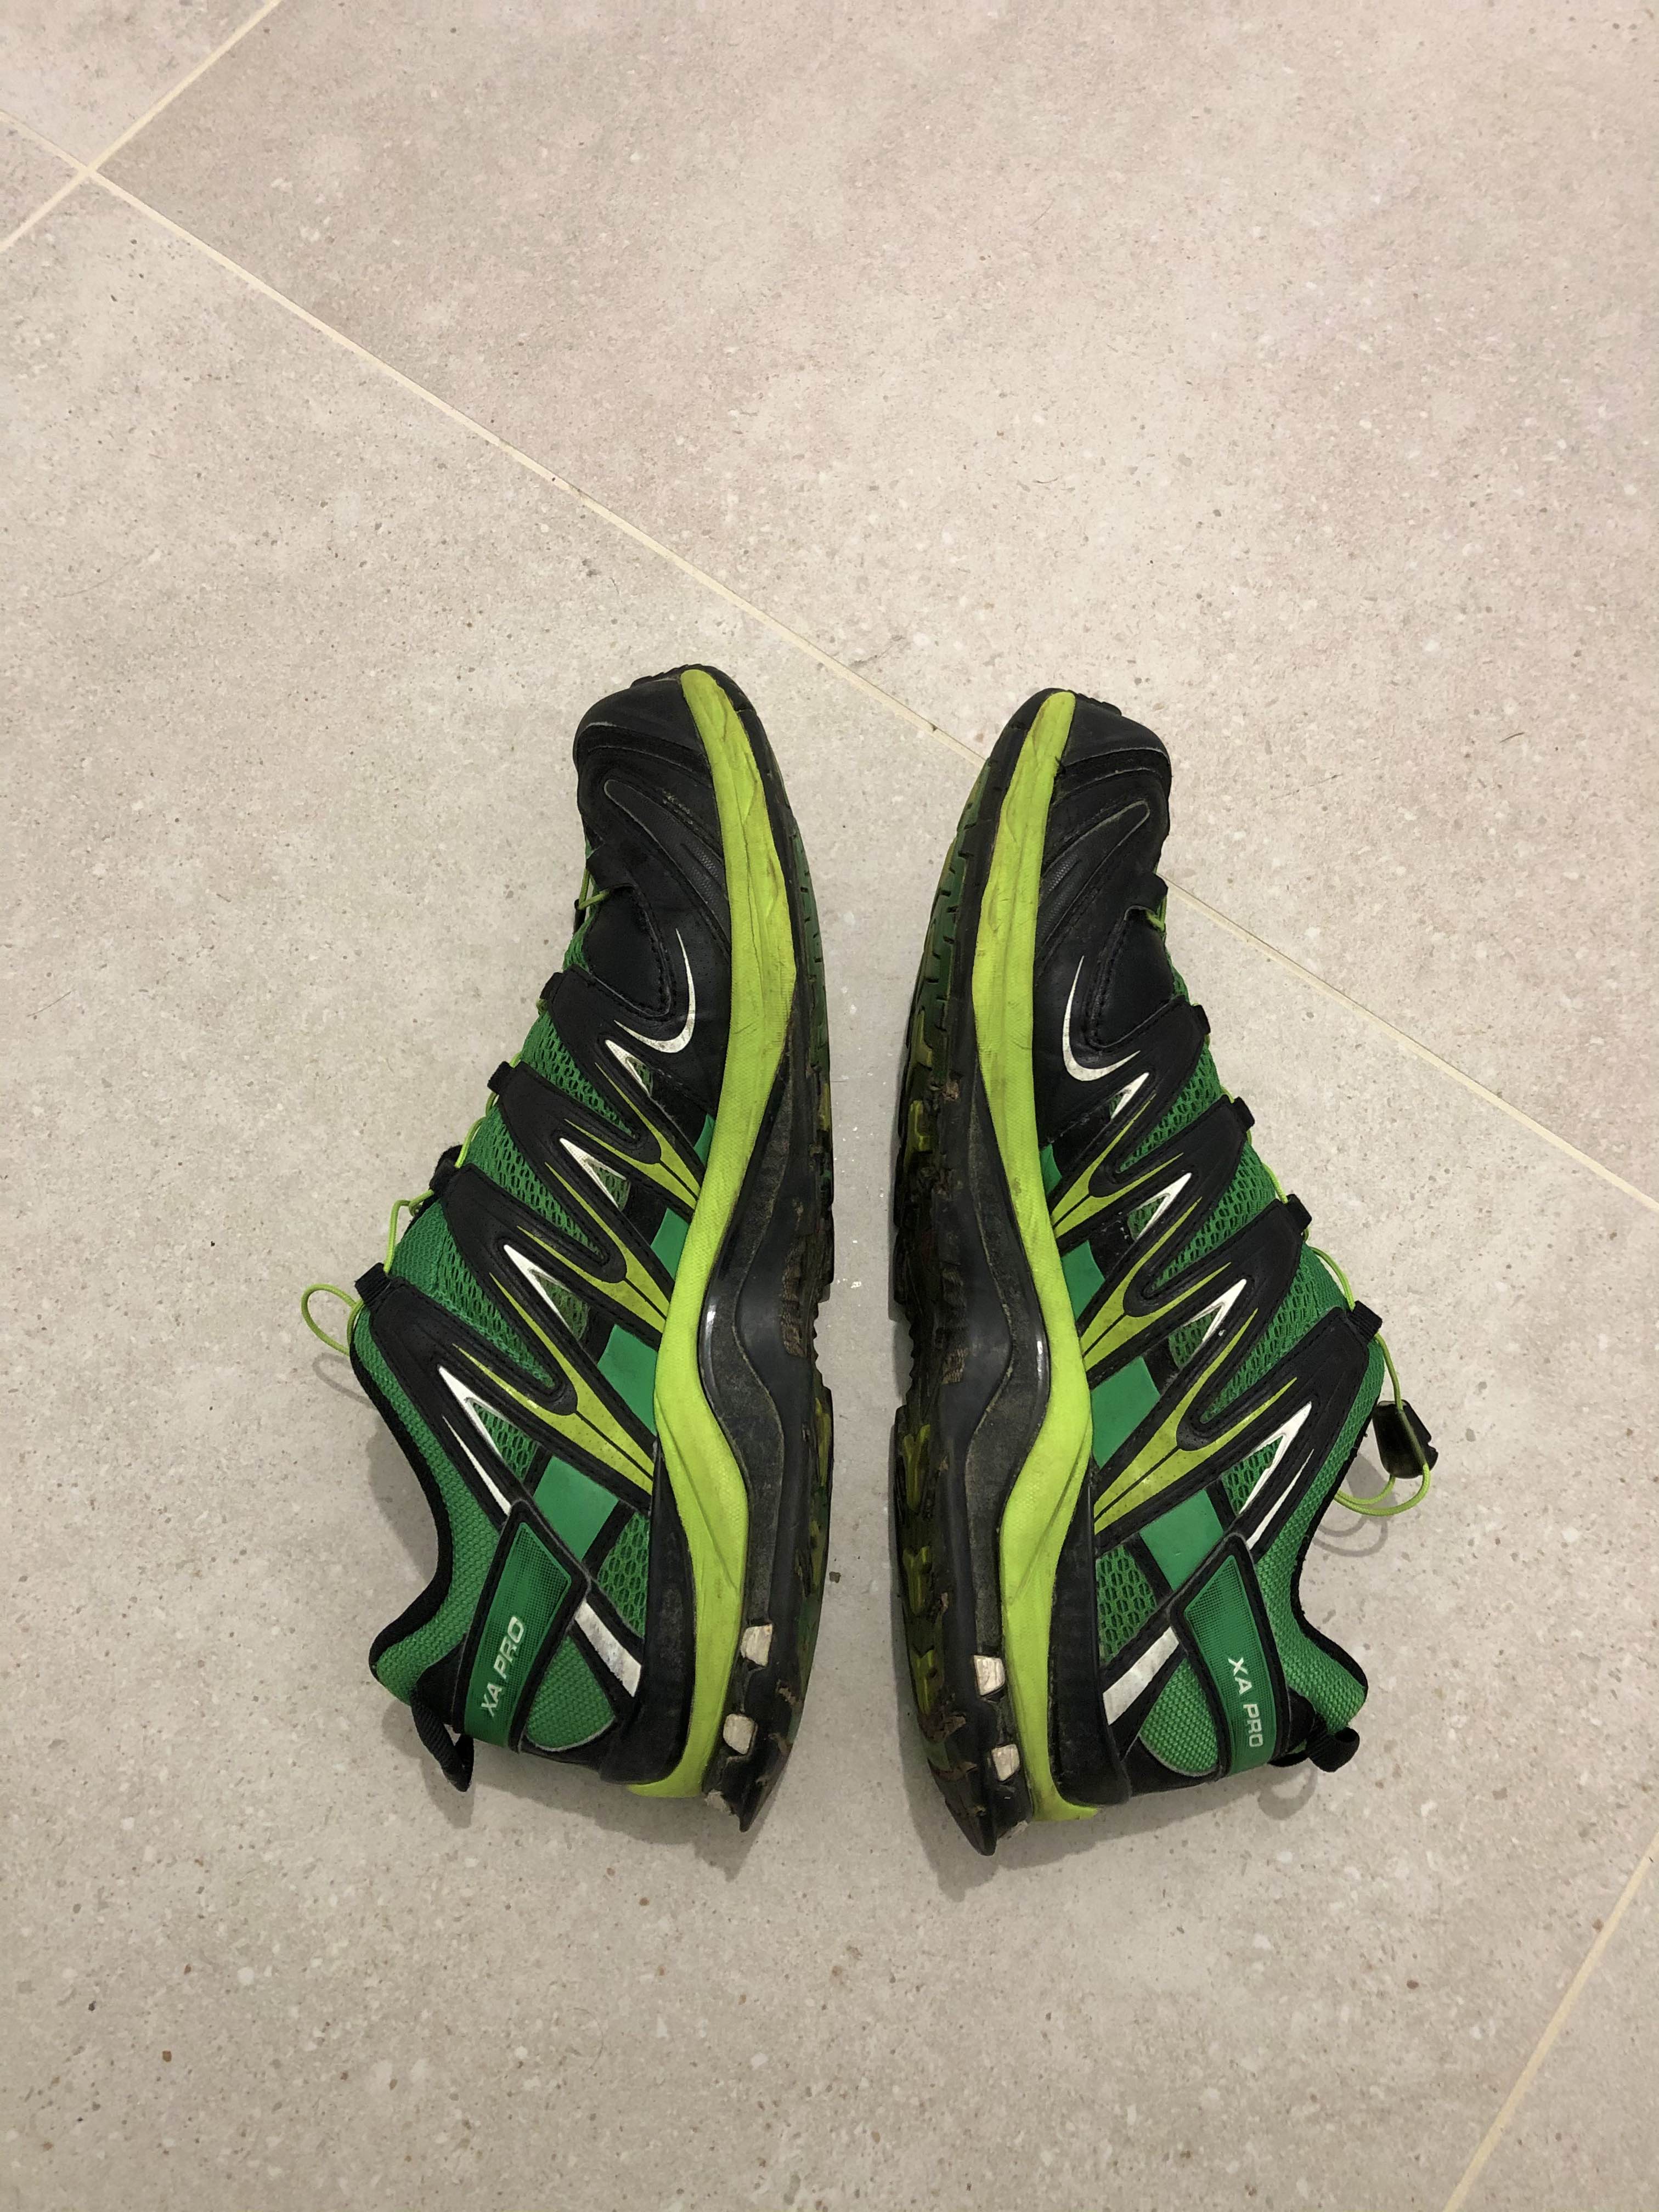 Salomon trail shoes - 2